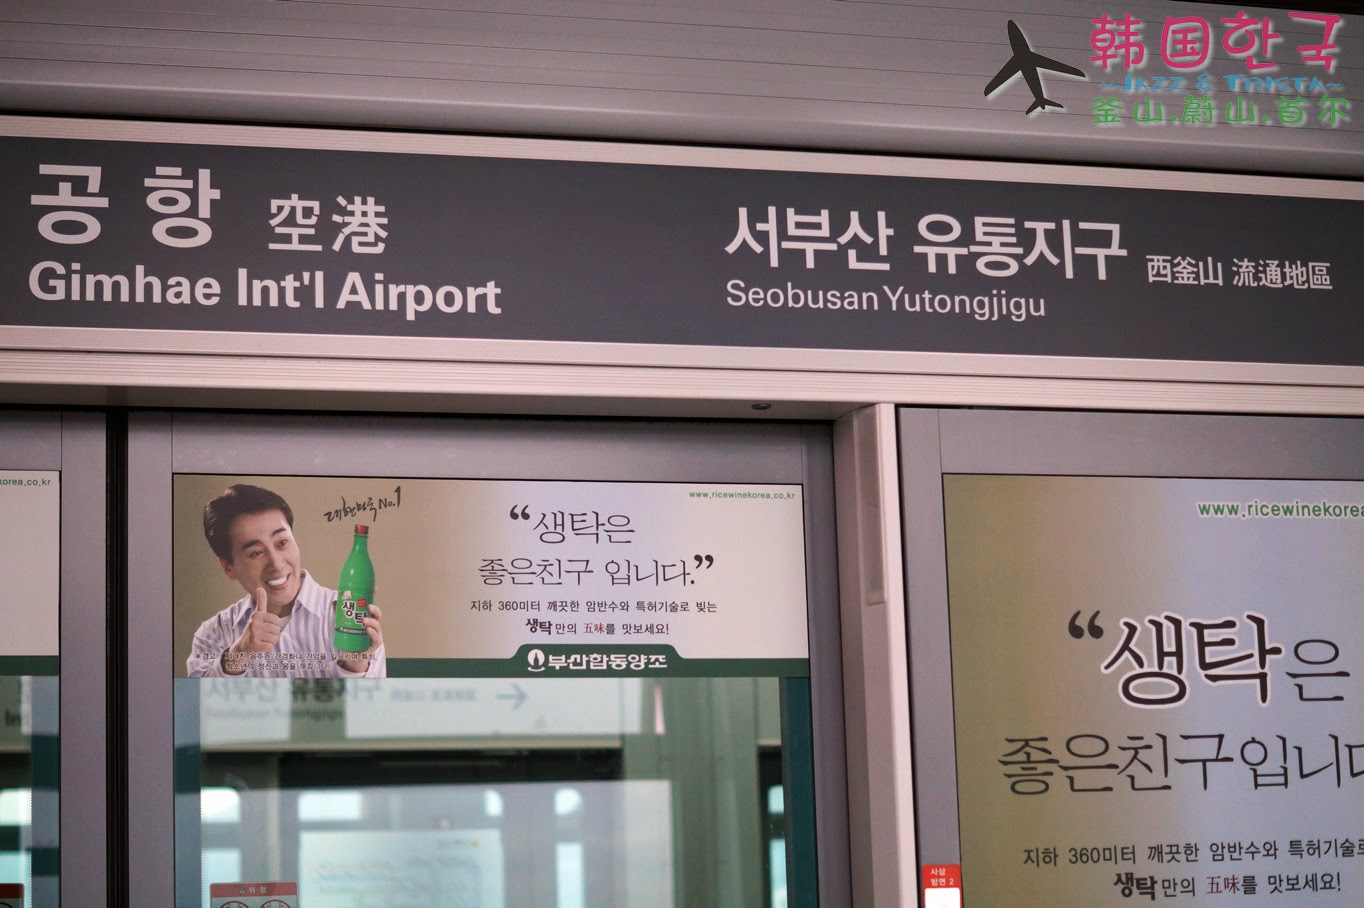 【韩国游记】金海国际机场 Gim Hae Airport | 釜山 |食在好玩 - 美食旅游部落格 Food & Travel Blog